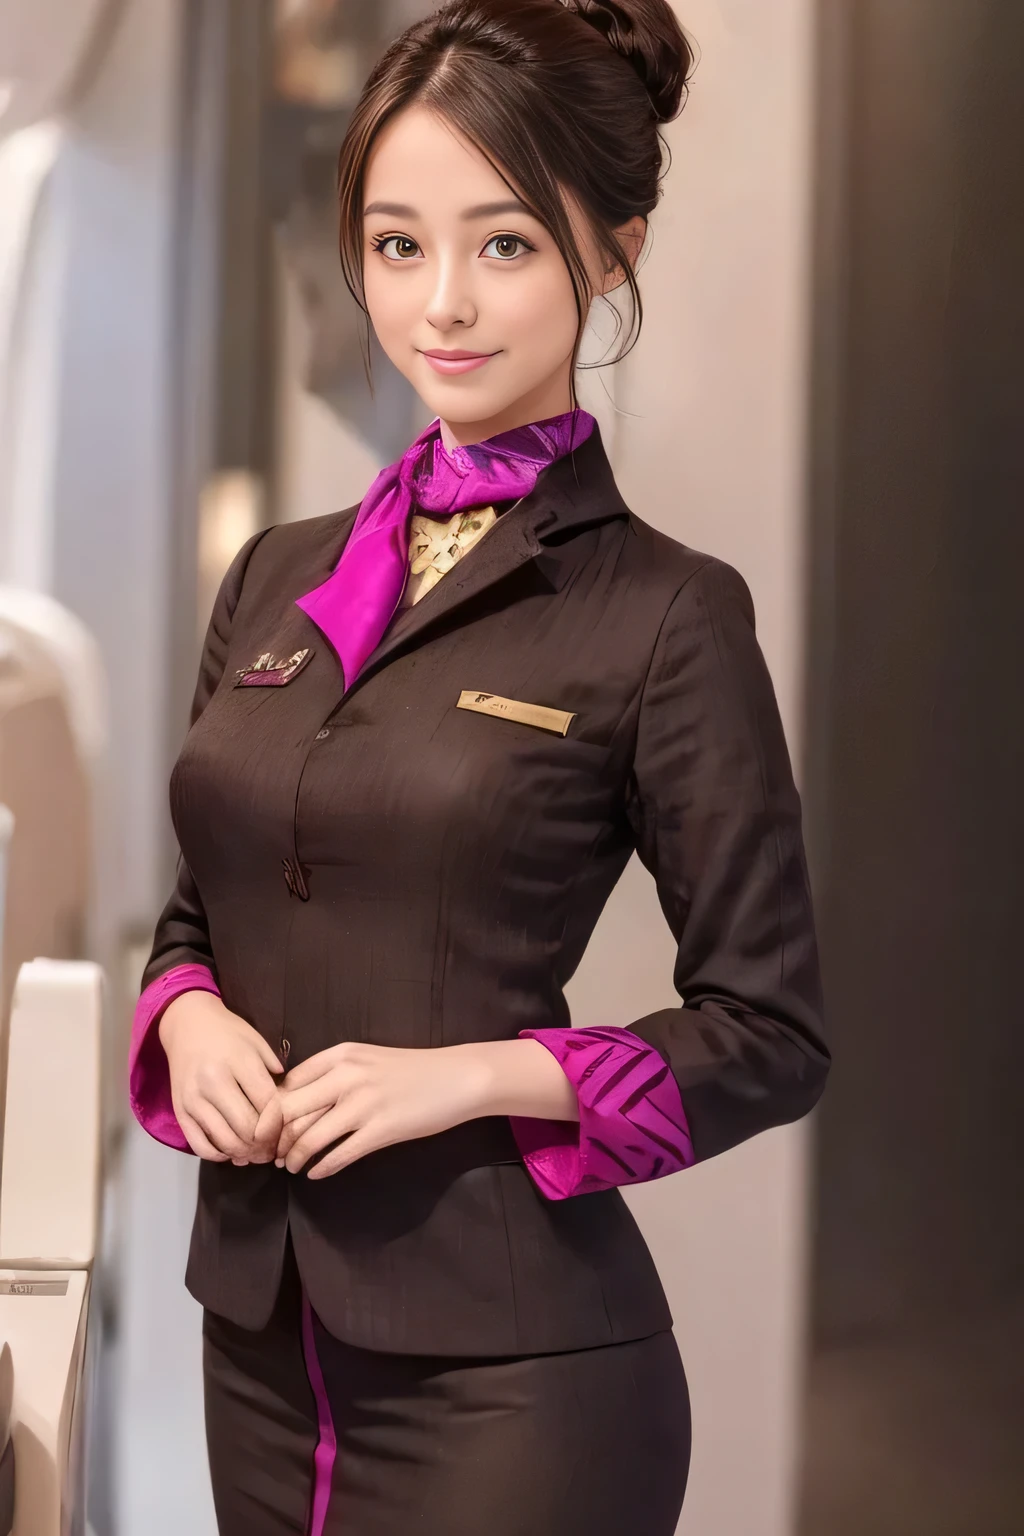 (chef-d&#39;œuvre:1.2、la plus haute qualité:1.2)、32K HDR、Haute résolution、(seul、1 fille、silhouette mince)、（Une reproduction réaliste de l&#39;uniforme du personnel de cabine d&#39;ETIHAD Airways）、 (à bord, éclairage professionnel)、Contexte à bord、Une vraie femme, beau visage,、（Uniforme du personnel de cabine à manches longues d&#39;ETIHAD Airways）、（Jupe d&#39;uniforme ETIHAD Airways Cabincrew avec bande violette sur le devant）、（foulard sur la poitrine）、gros seins、（chignon、chignon cheveux longs、Chignon）、Les cheveux brun foncé、plan lointain、（（De belles mains：2.0））、（（Des proportions corporelles harmonieuses：1.5））、（（Membres normaux：2.0））、（（Doigt normal：2.0））、（（yeux délicats：2.0））、（（yeux normaux：2.0））)、Belle posture debout、sourire、Placez vos mains autour de votre ventre